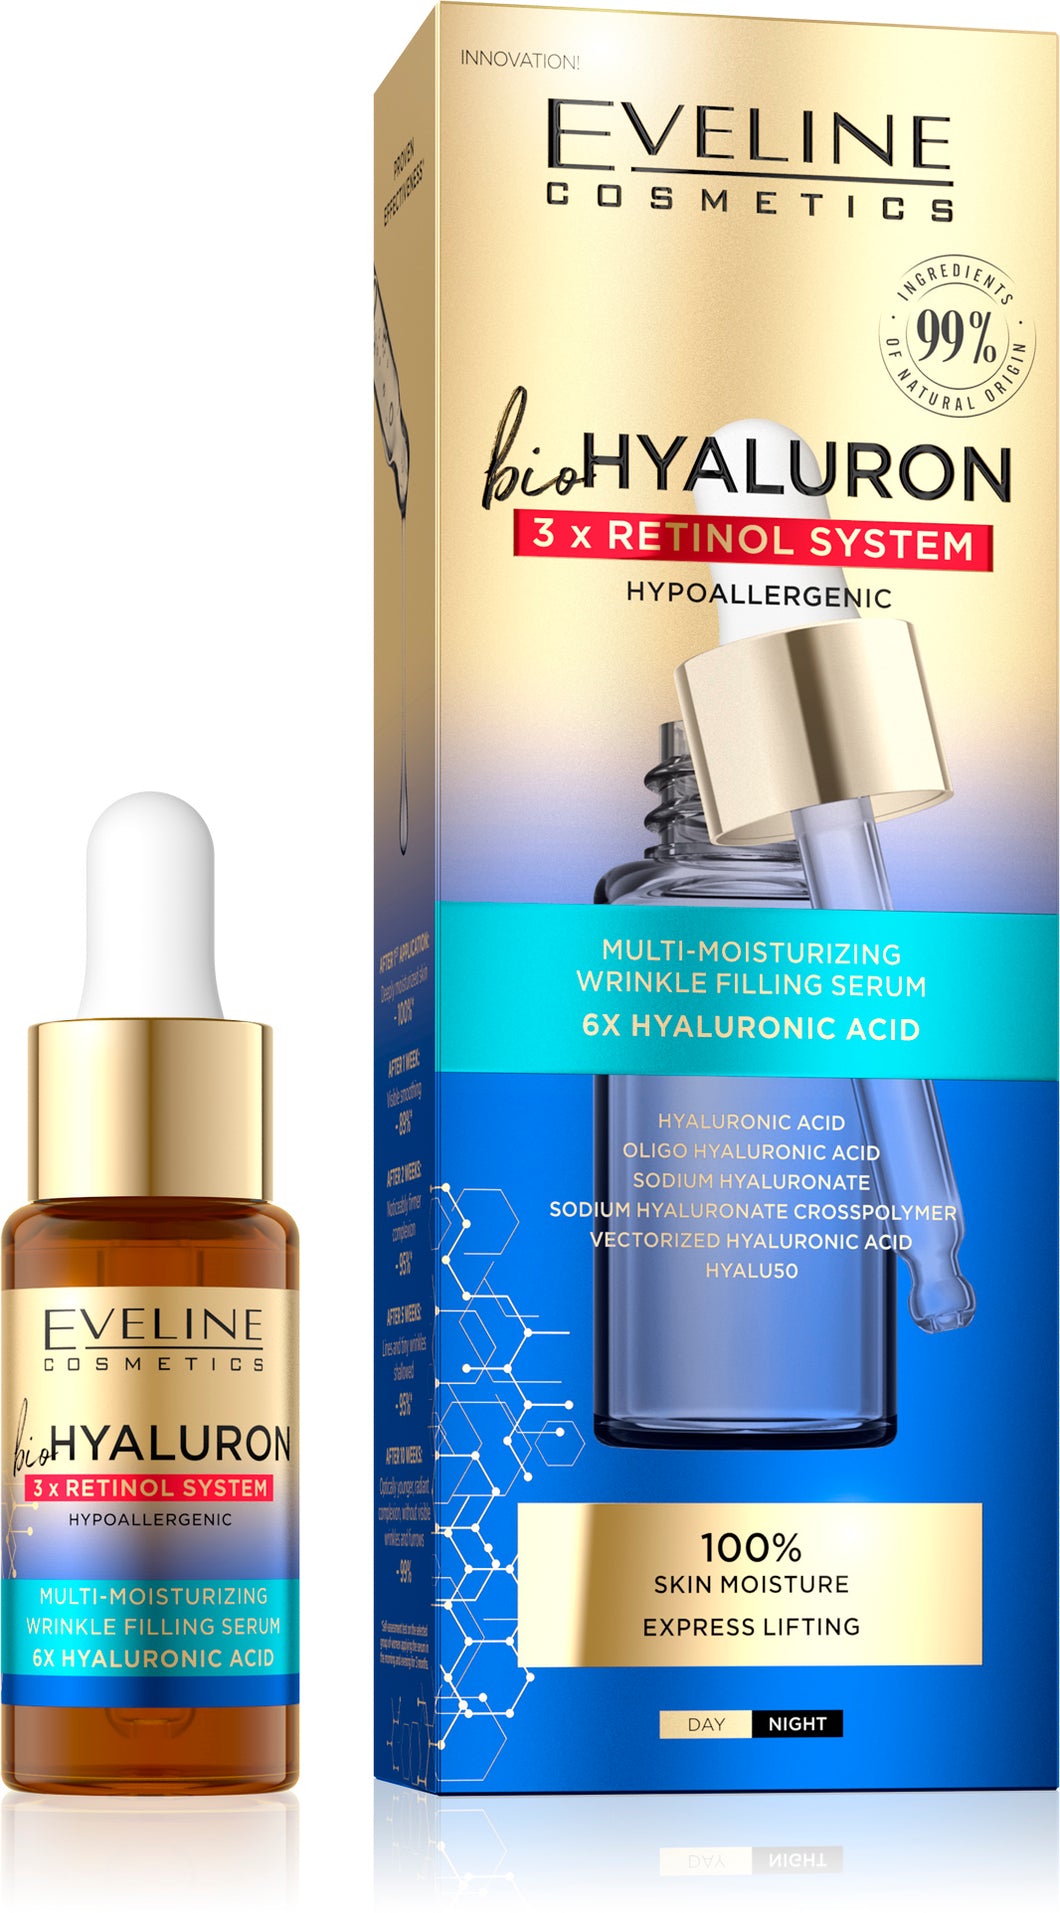 Eveline bio hyaluron -3x retinol moisturising serum 18ml